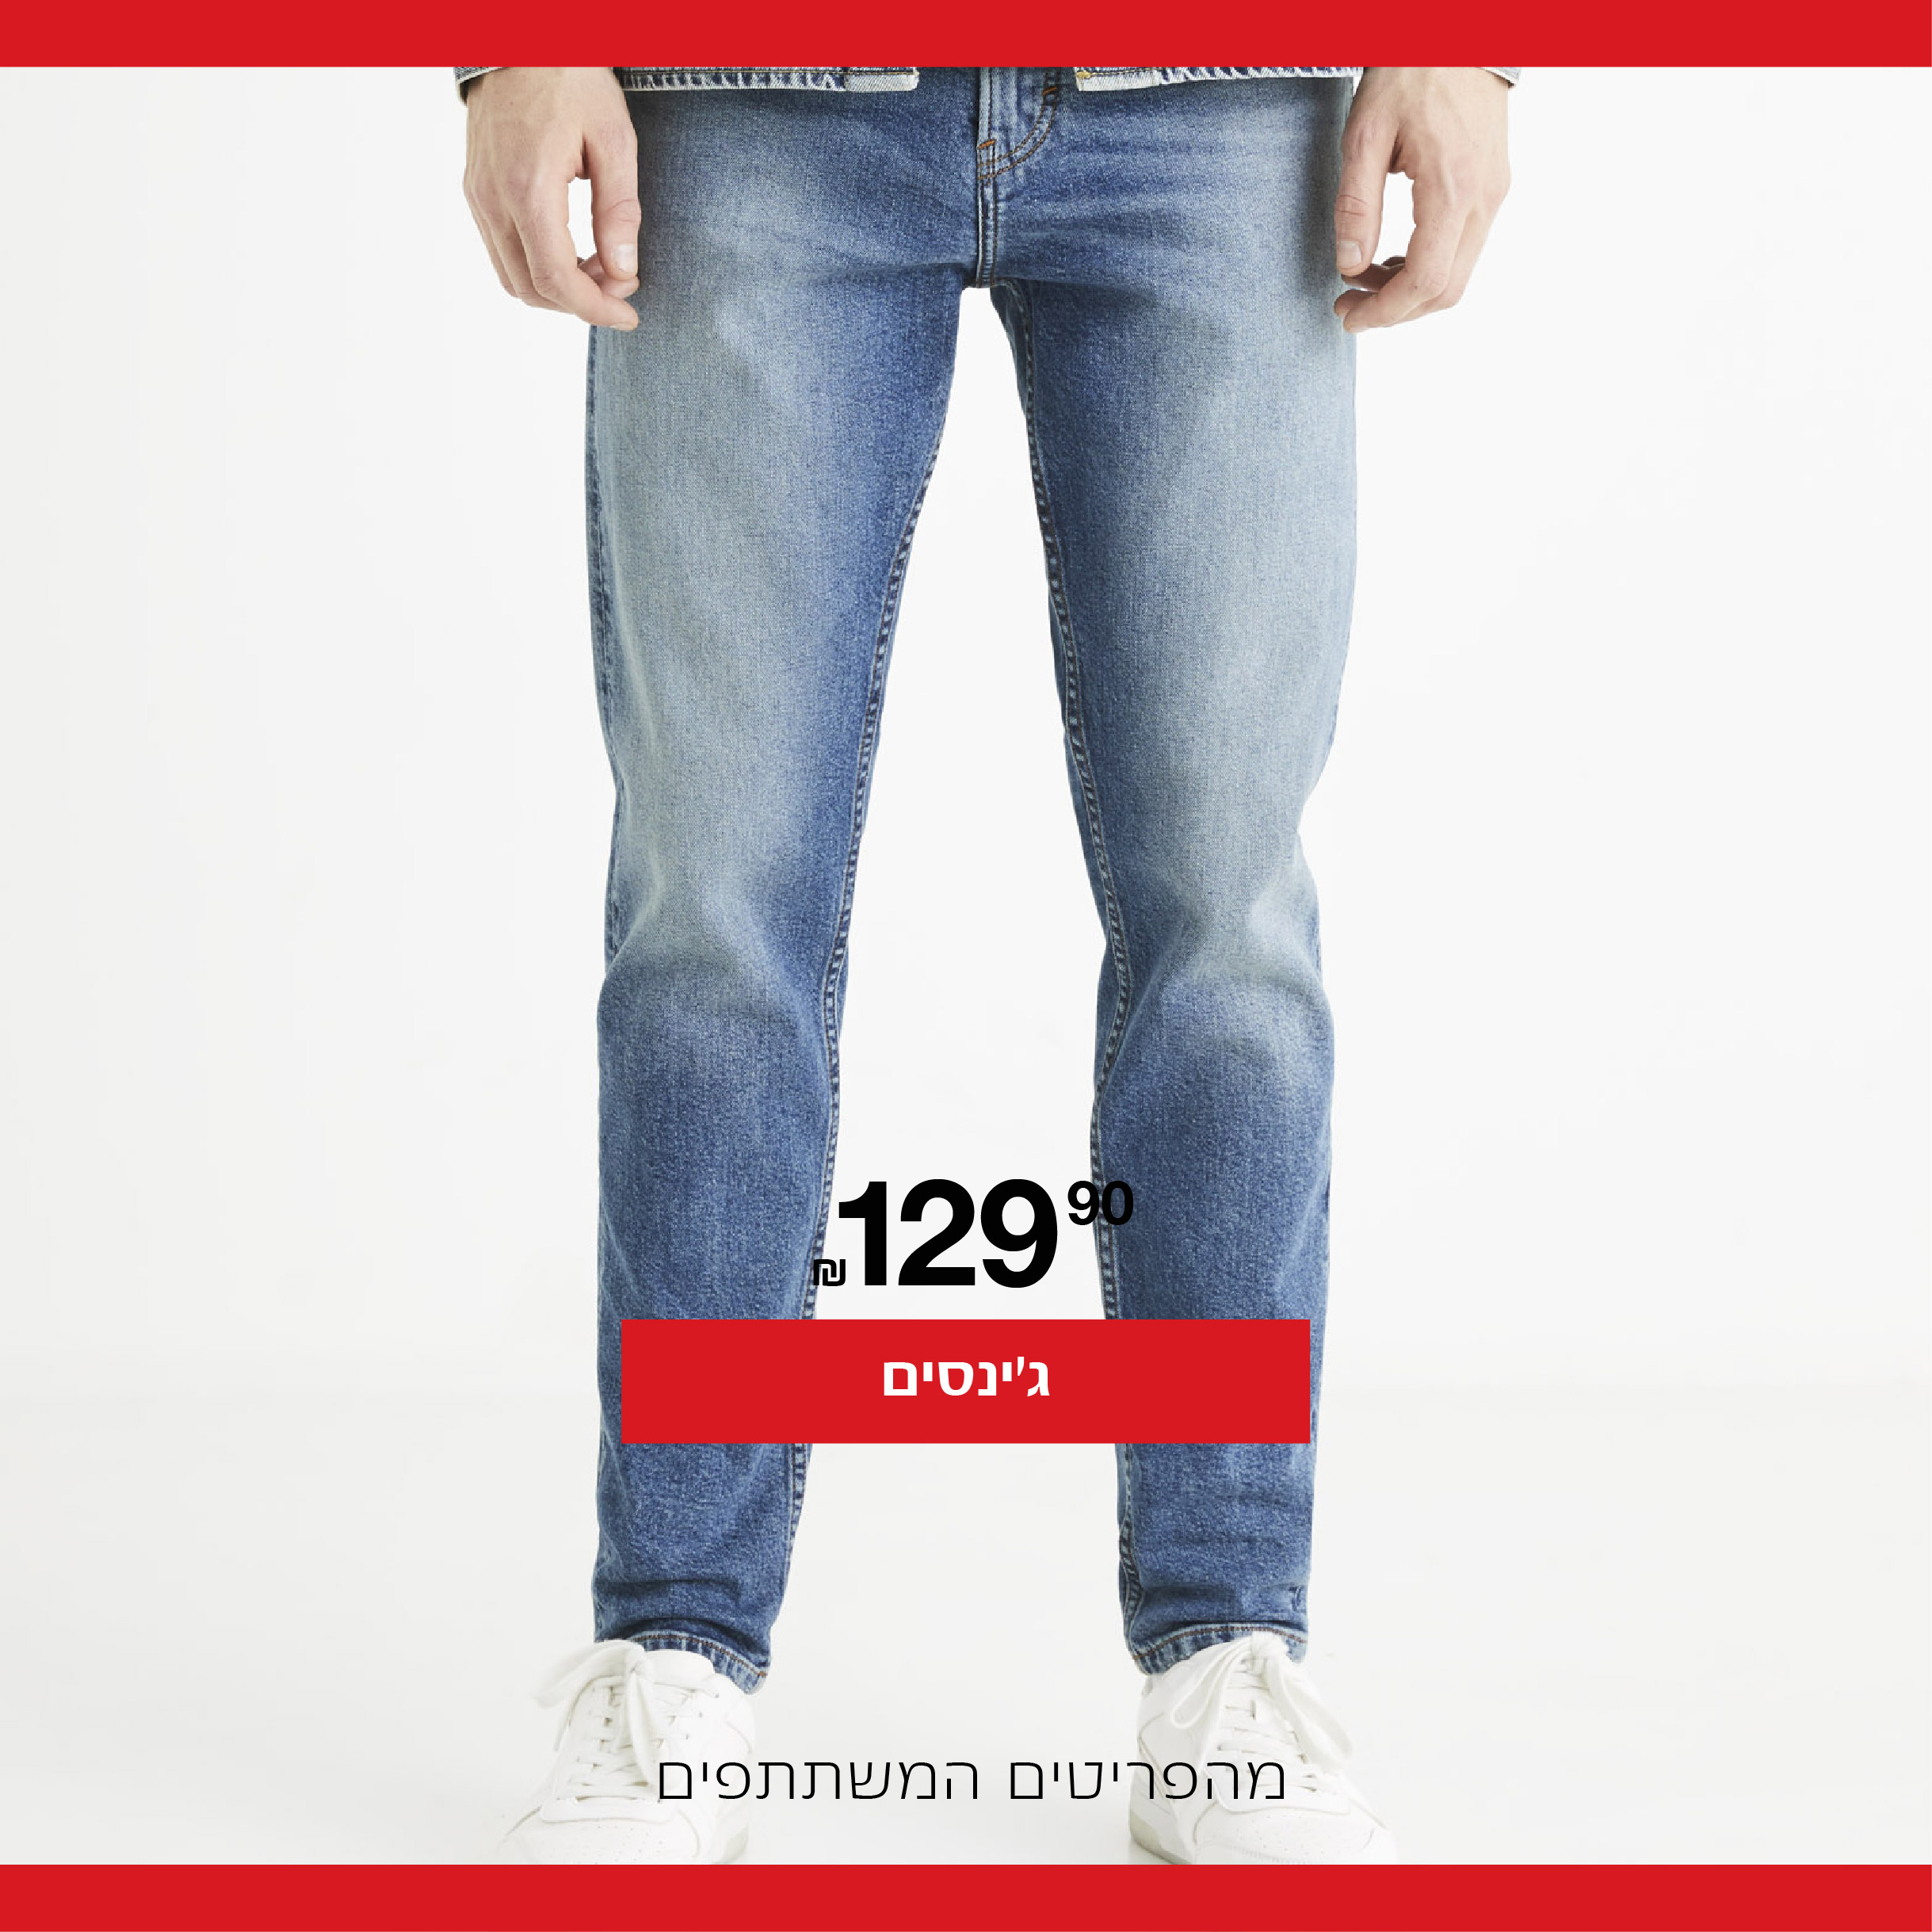 ג'ינסים 129.9 ₪